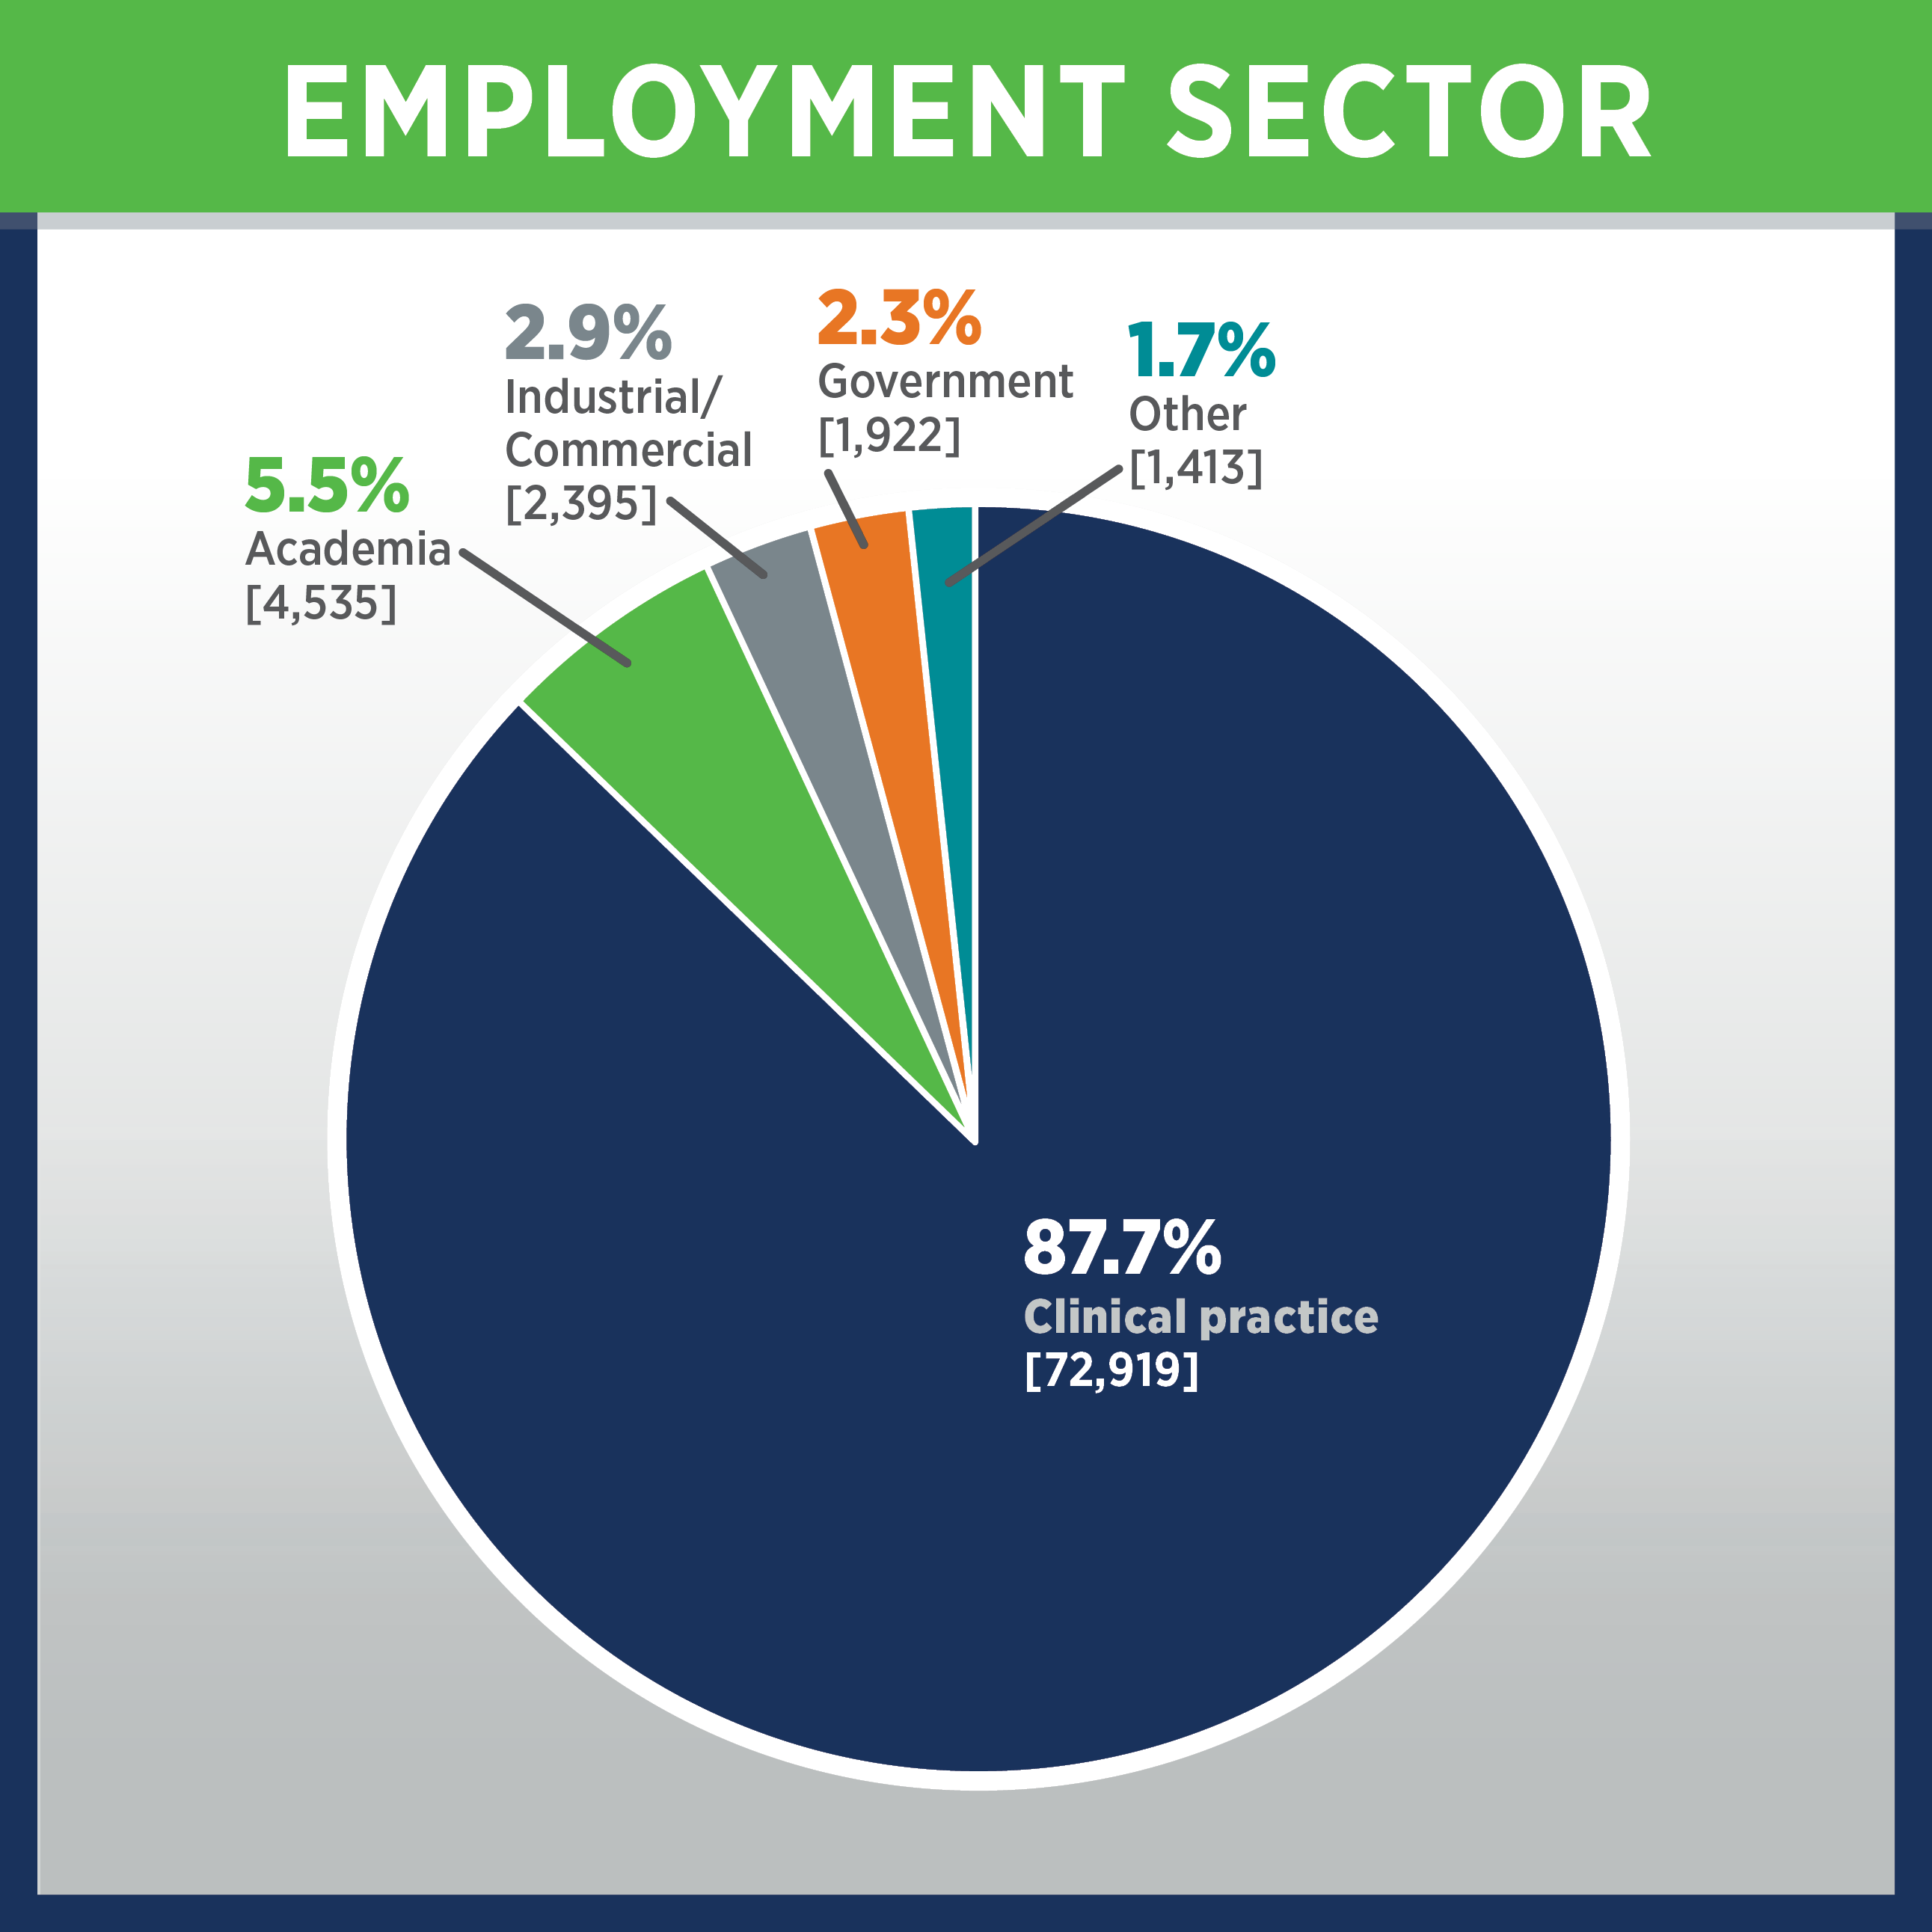 Employment sector pie chart